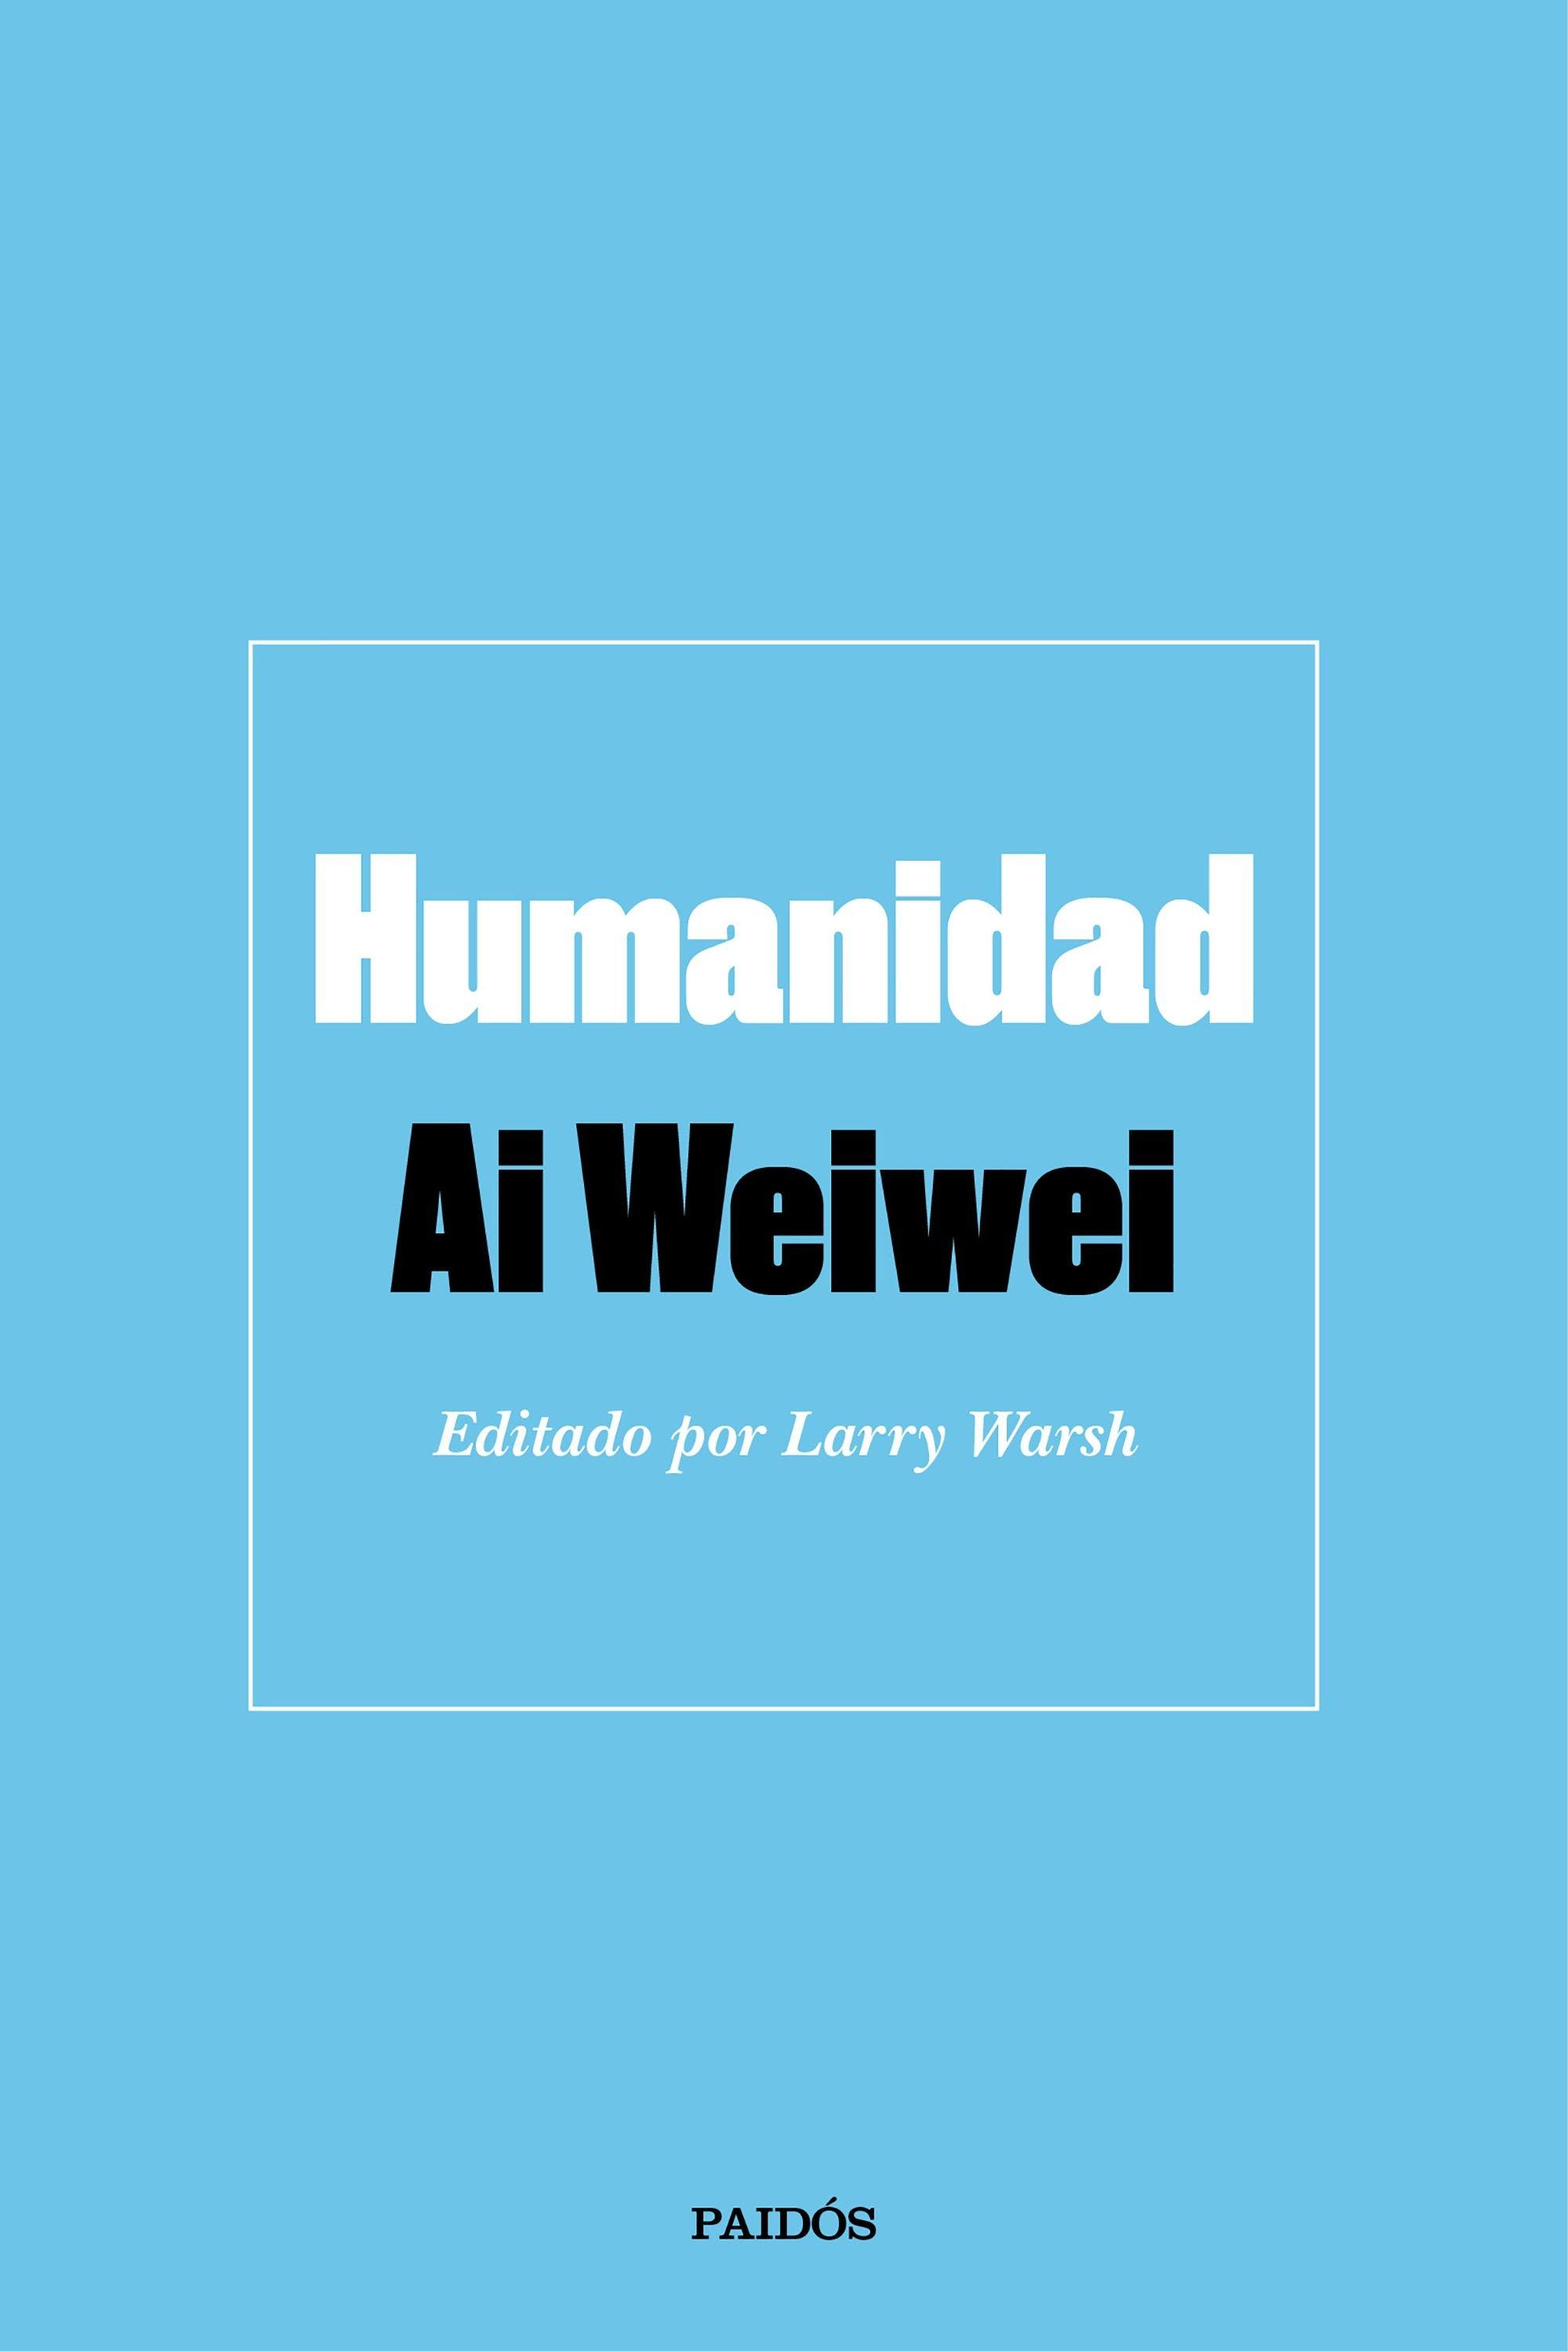 Humanidad "Editado por Larry Warsh". 